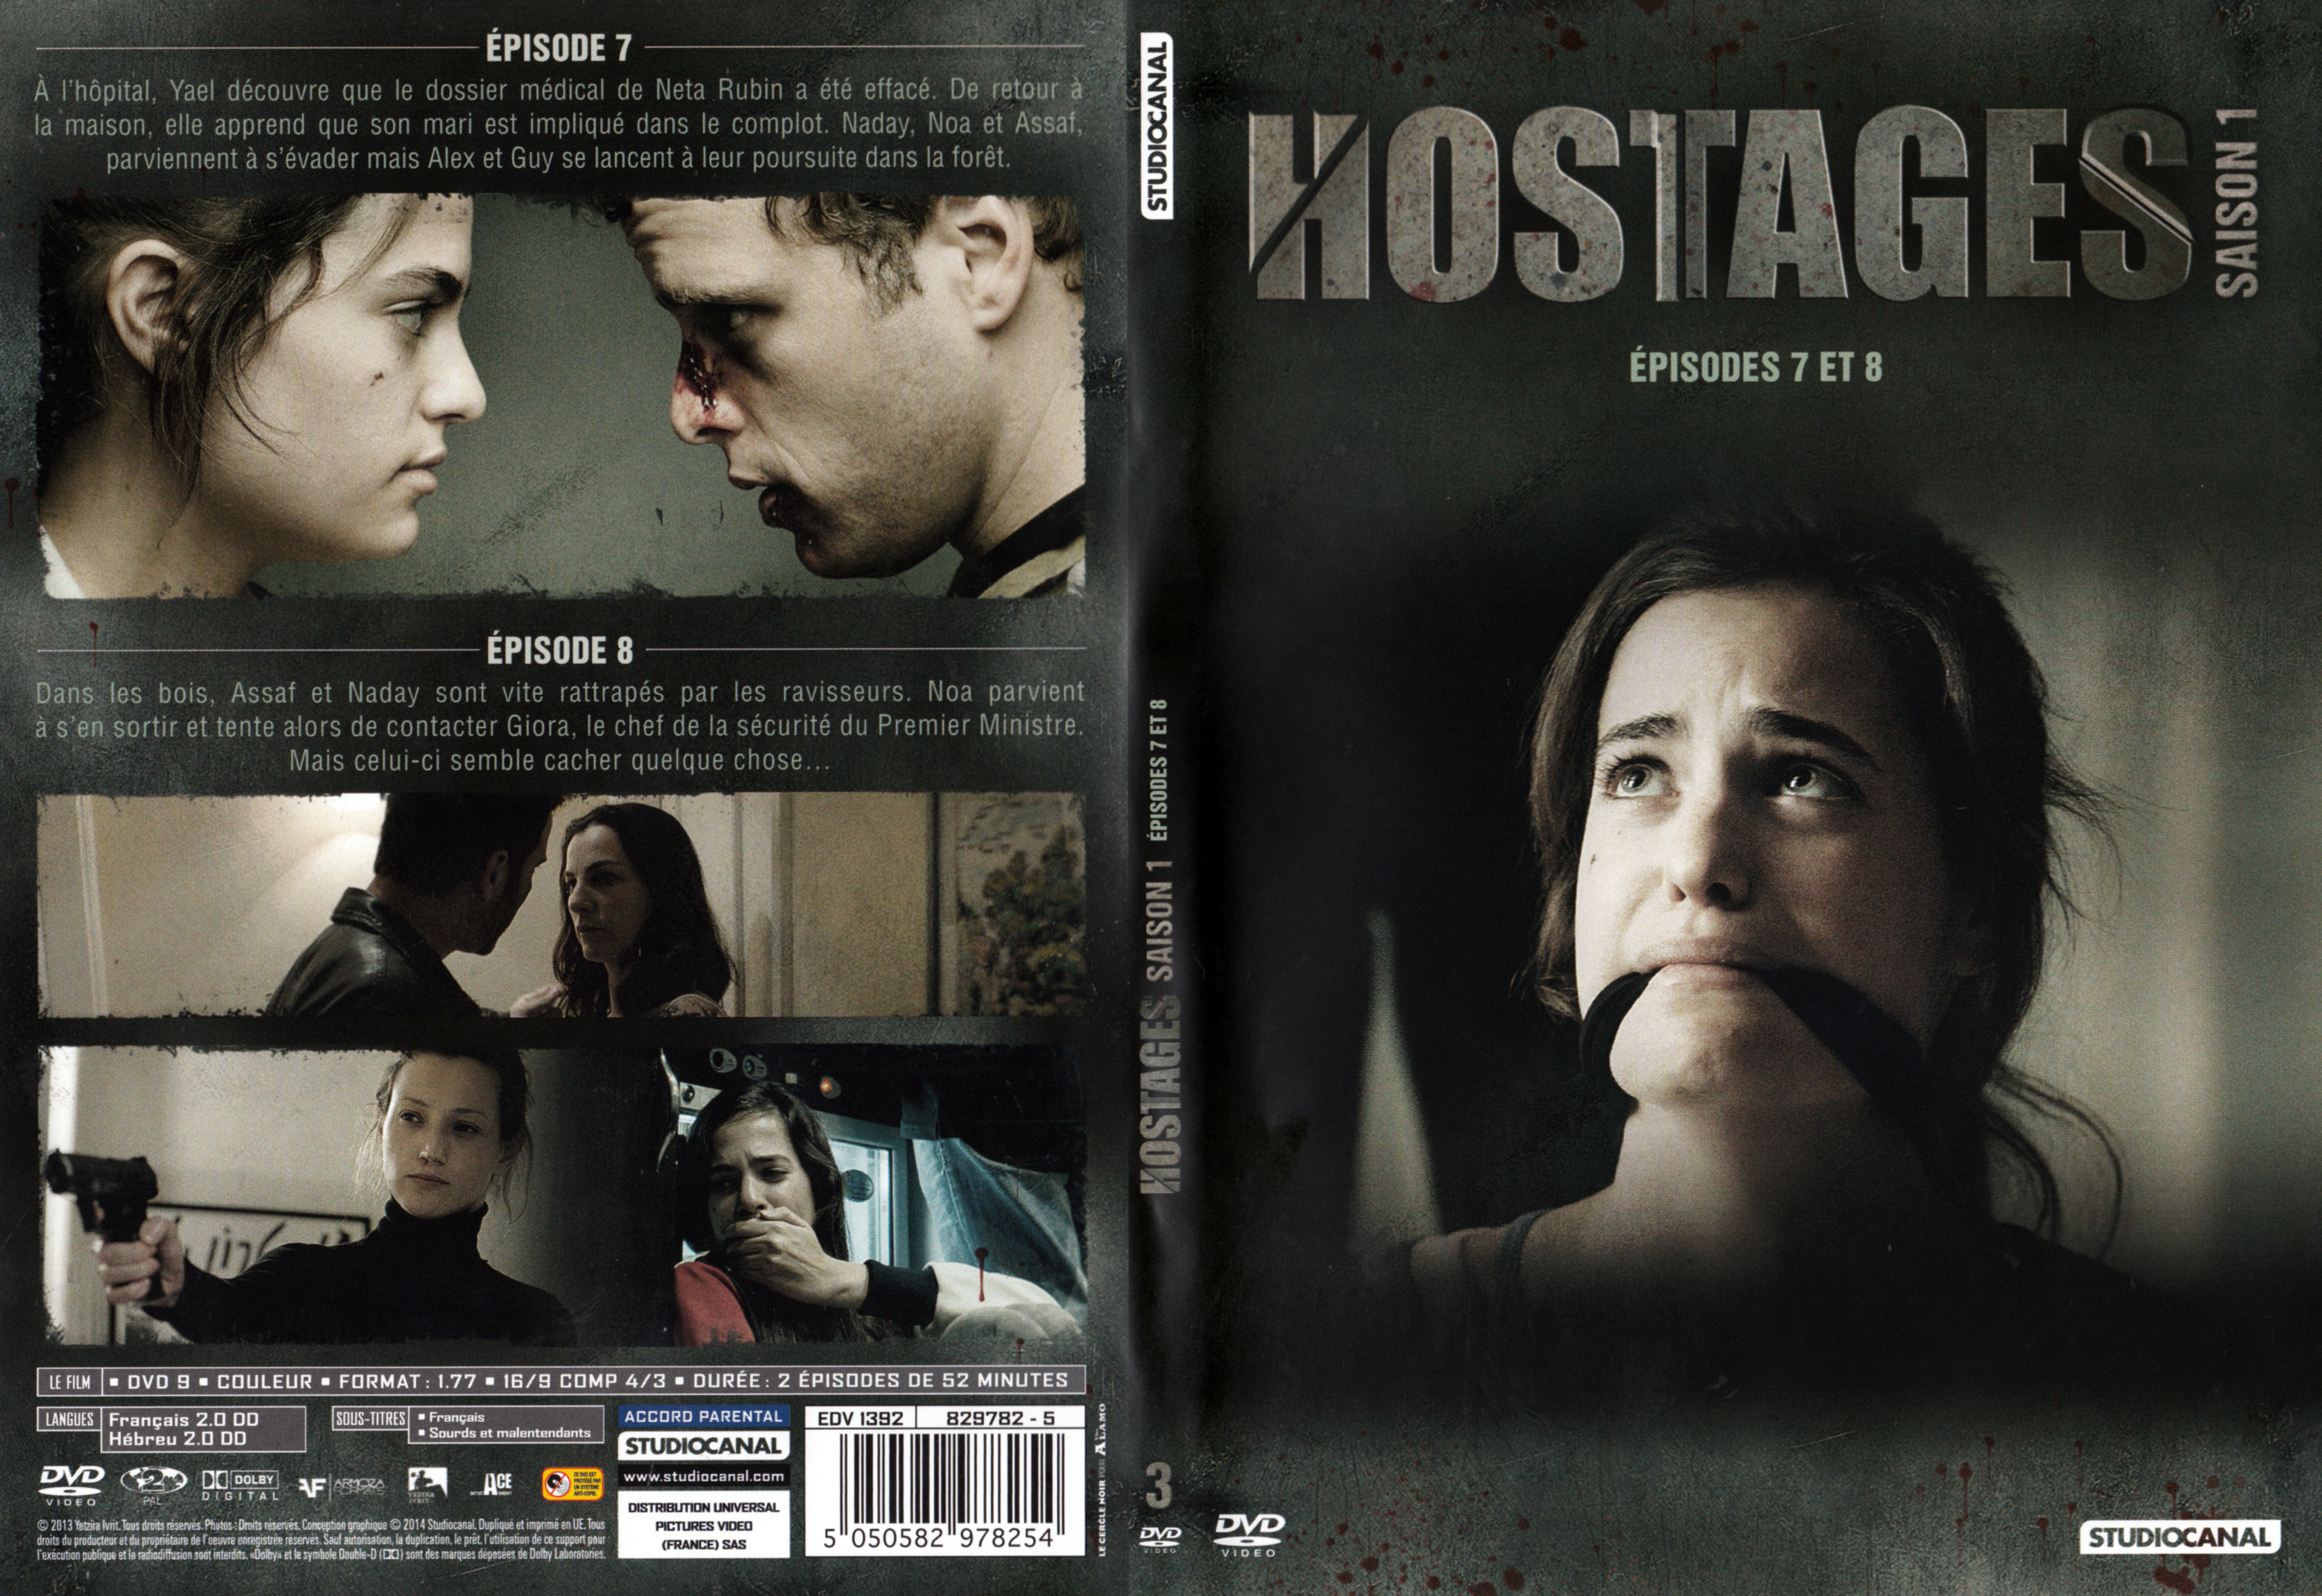 Jaquette DVD Hostages Saison 1 DVD 3